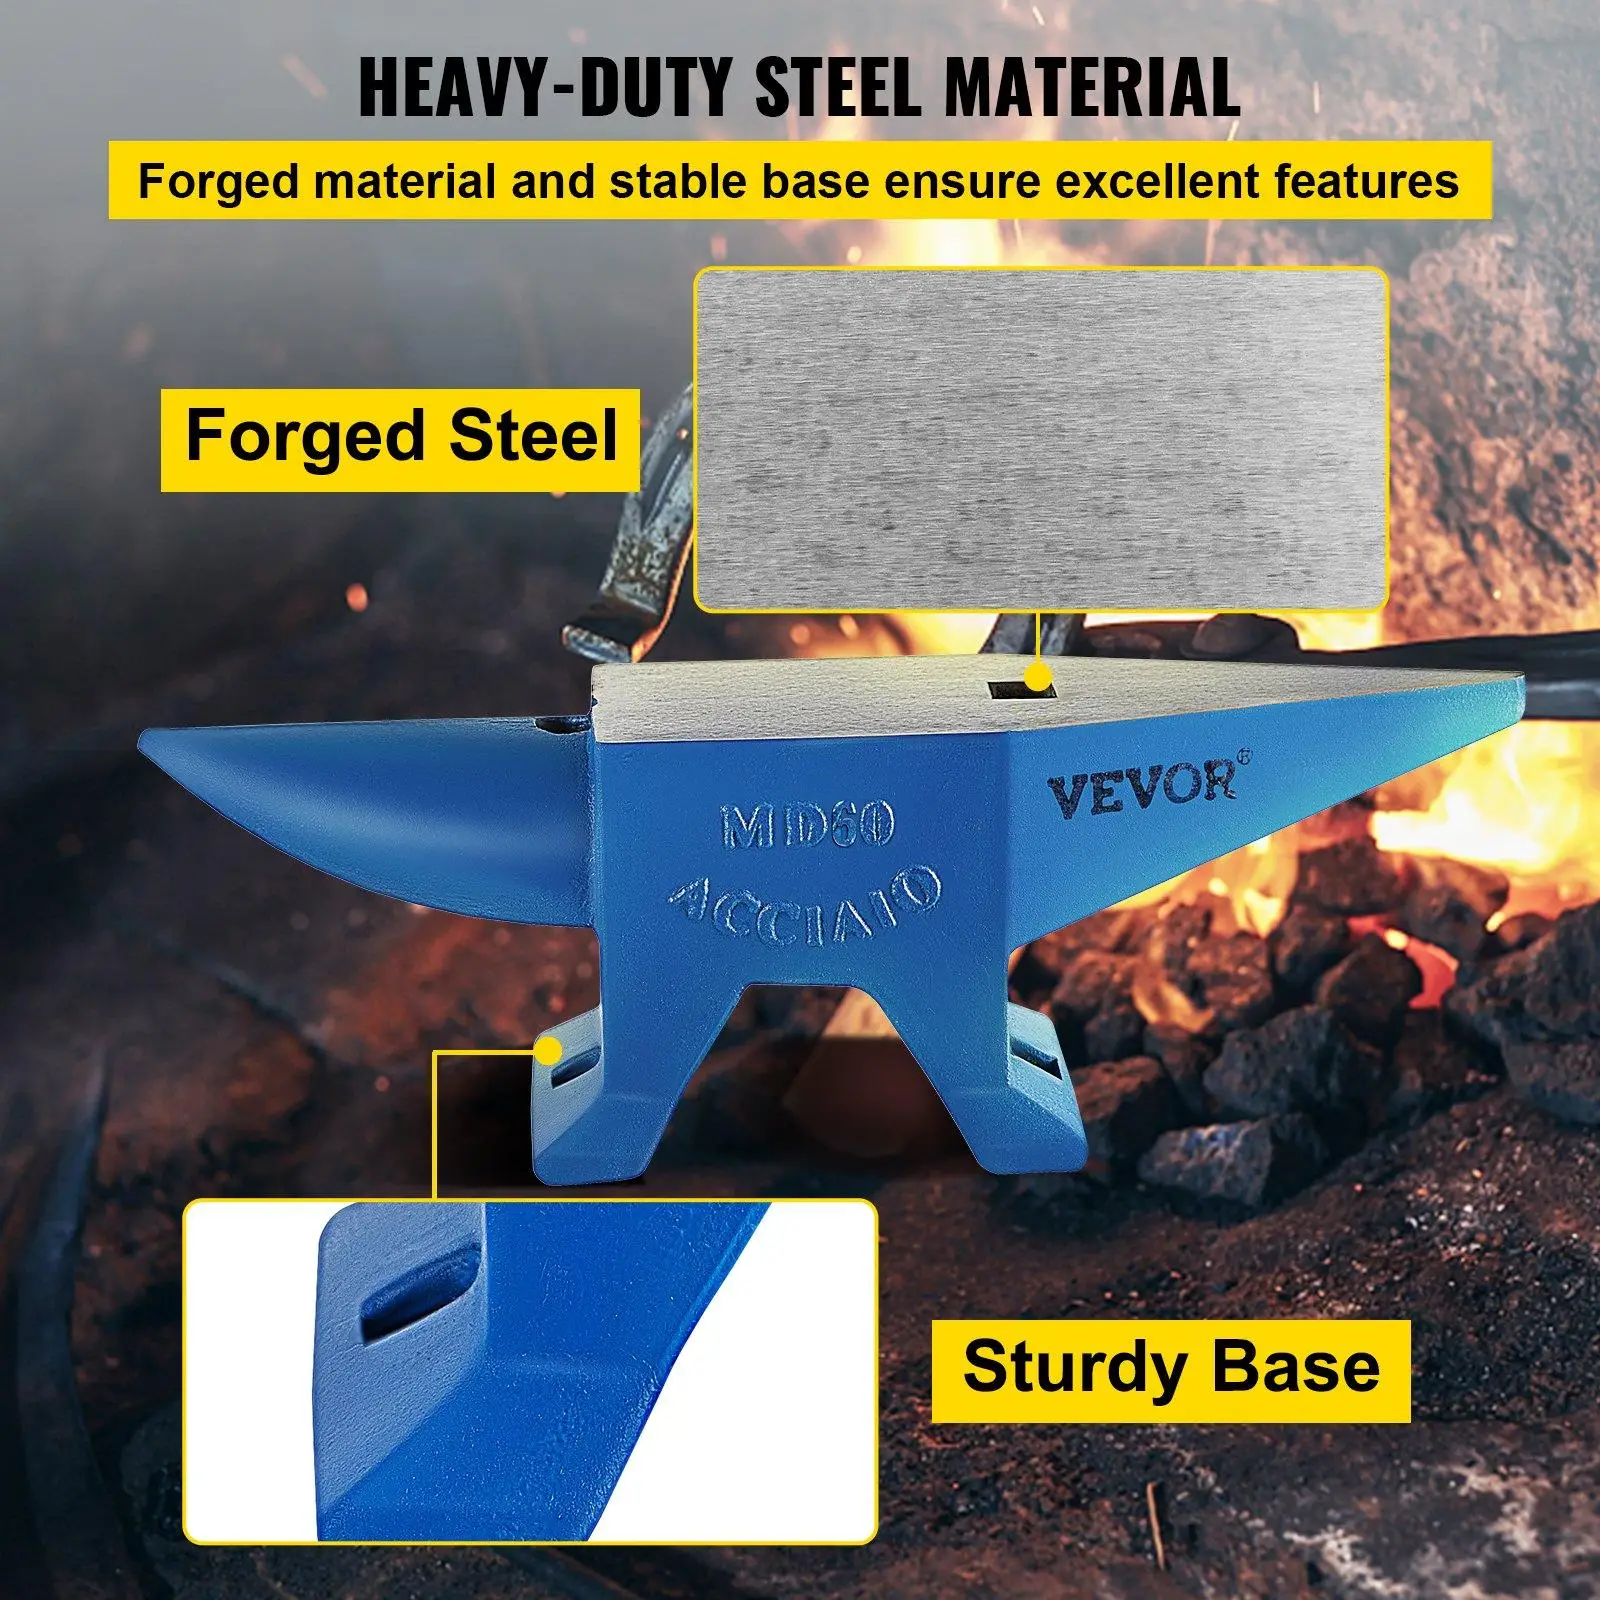 Heavy duty steel material